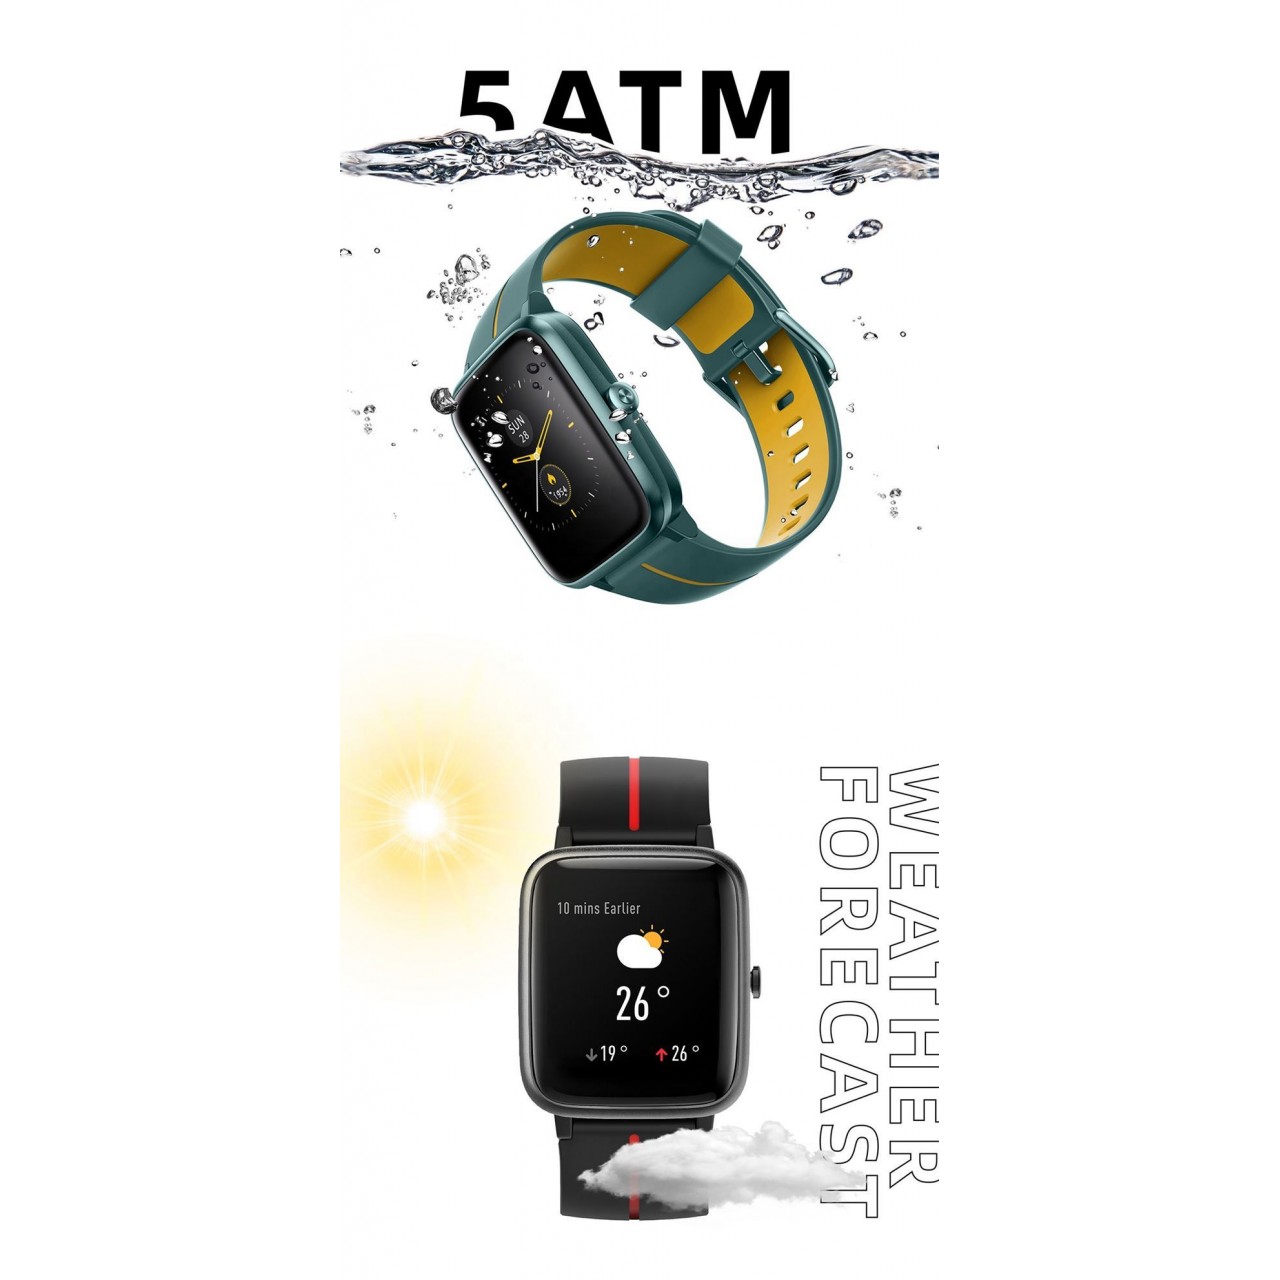 Ρολόι Smart - Havit M9002G - 5952 - Μαύρο 